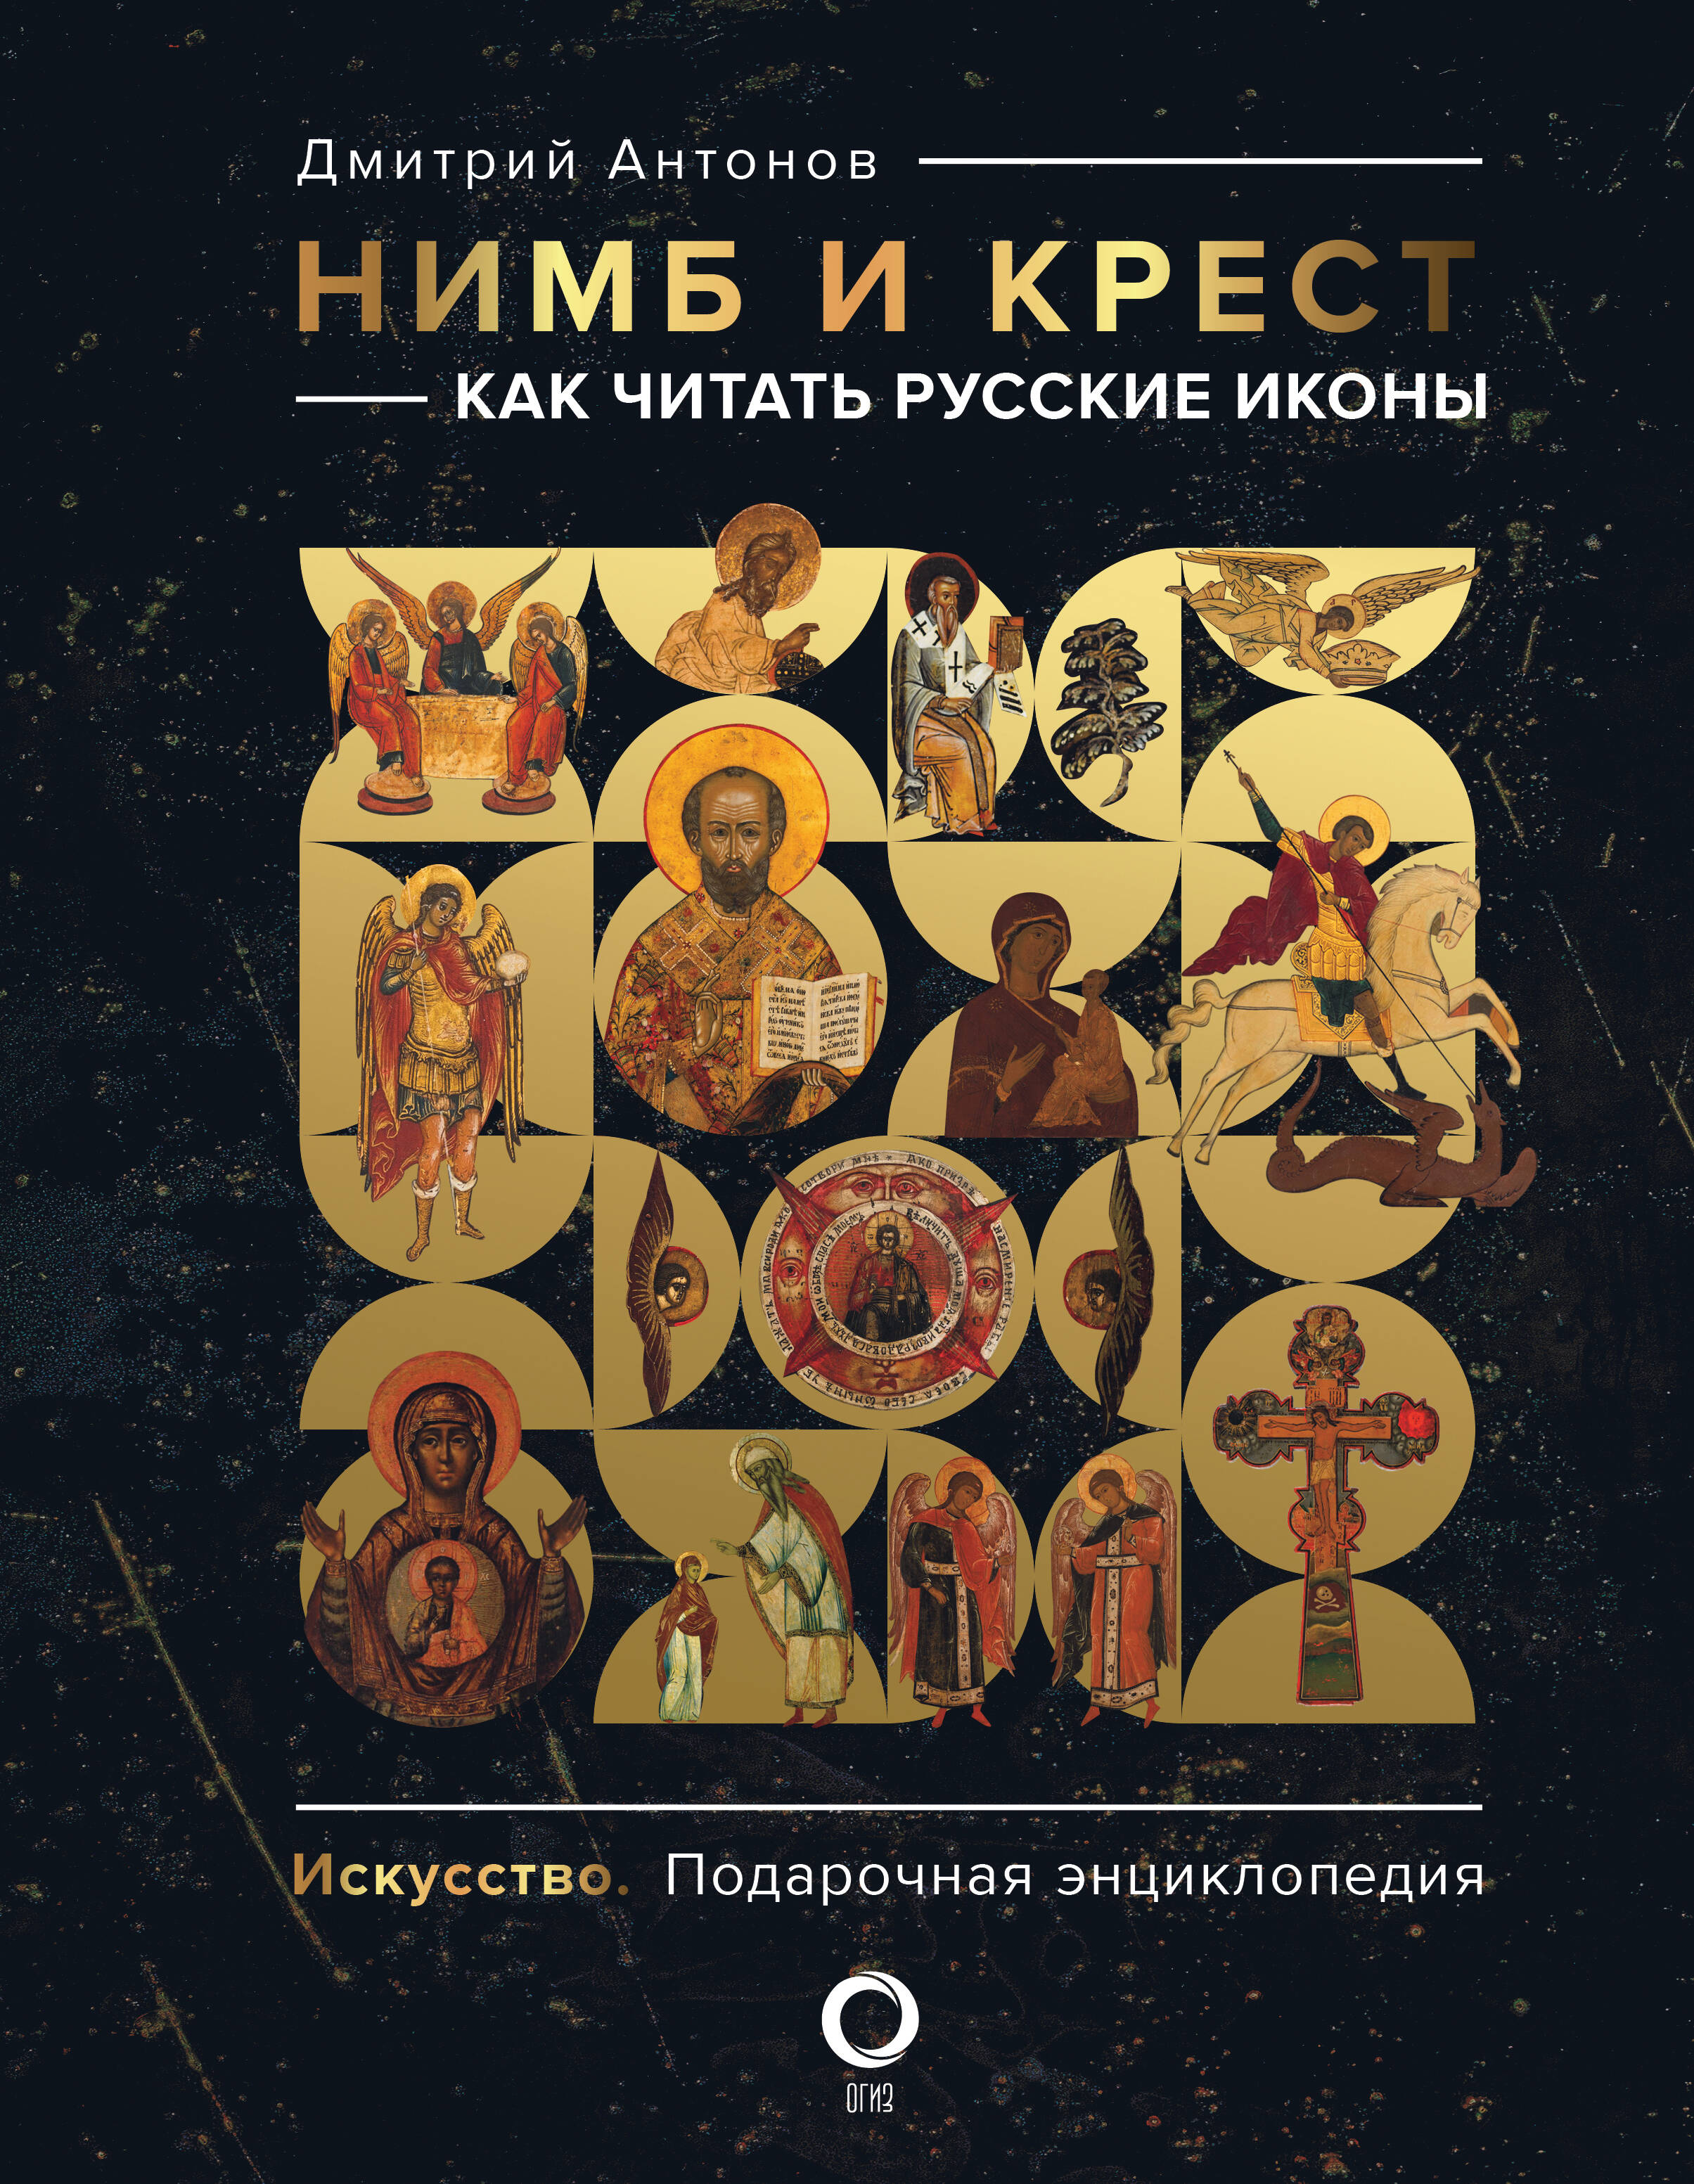 цена Антонов Дмитрий Игоревич Нимб и крест: как читать русские иконы